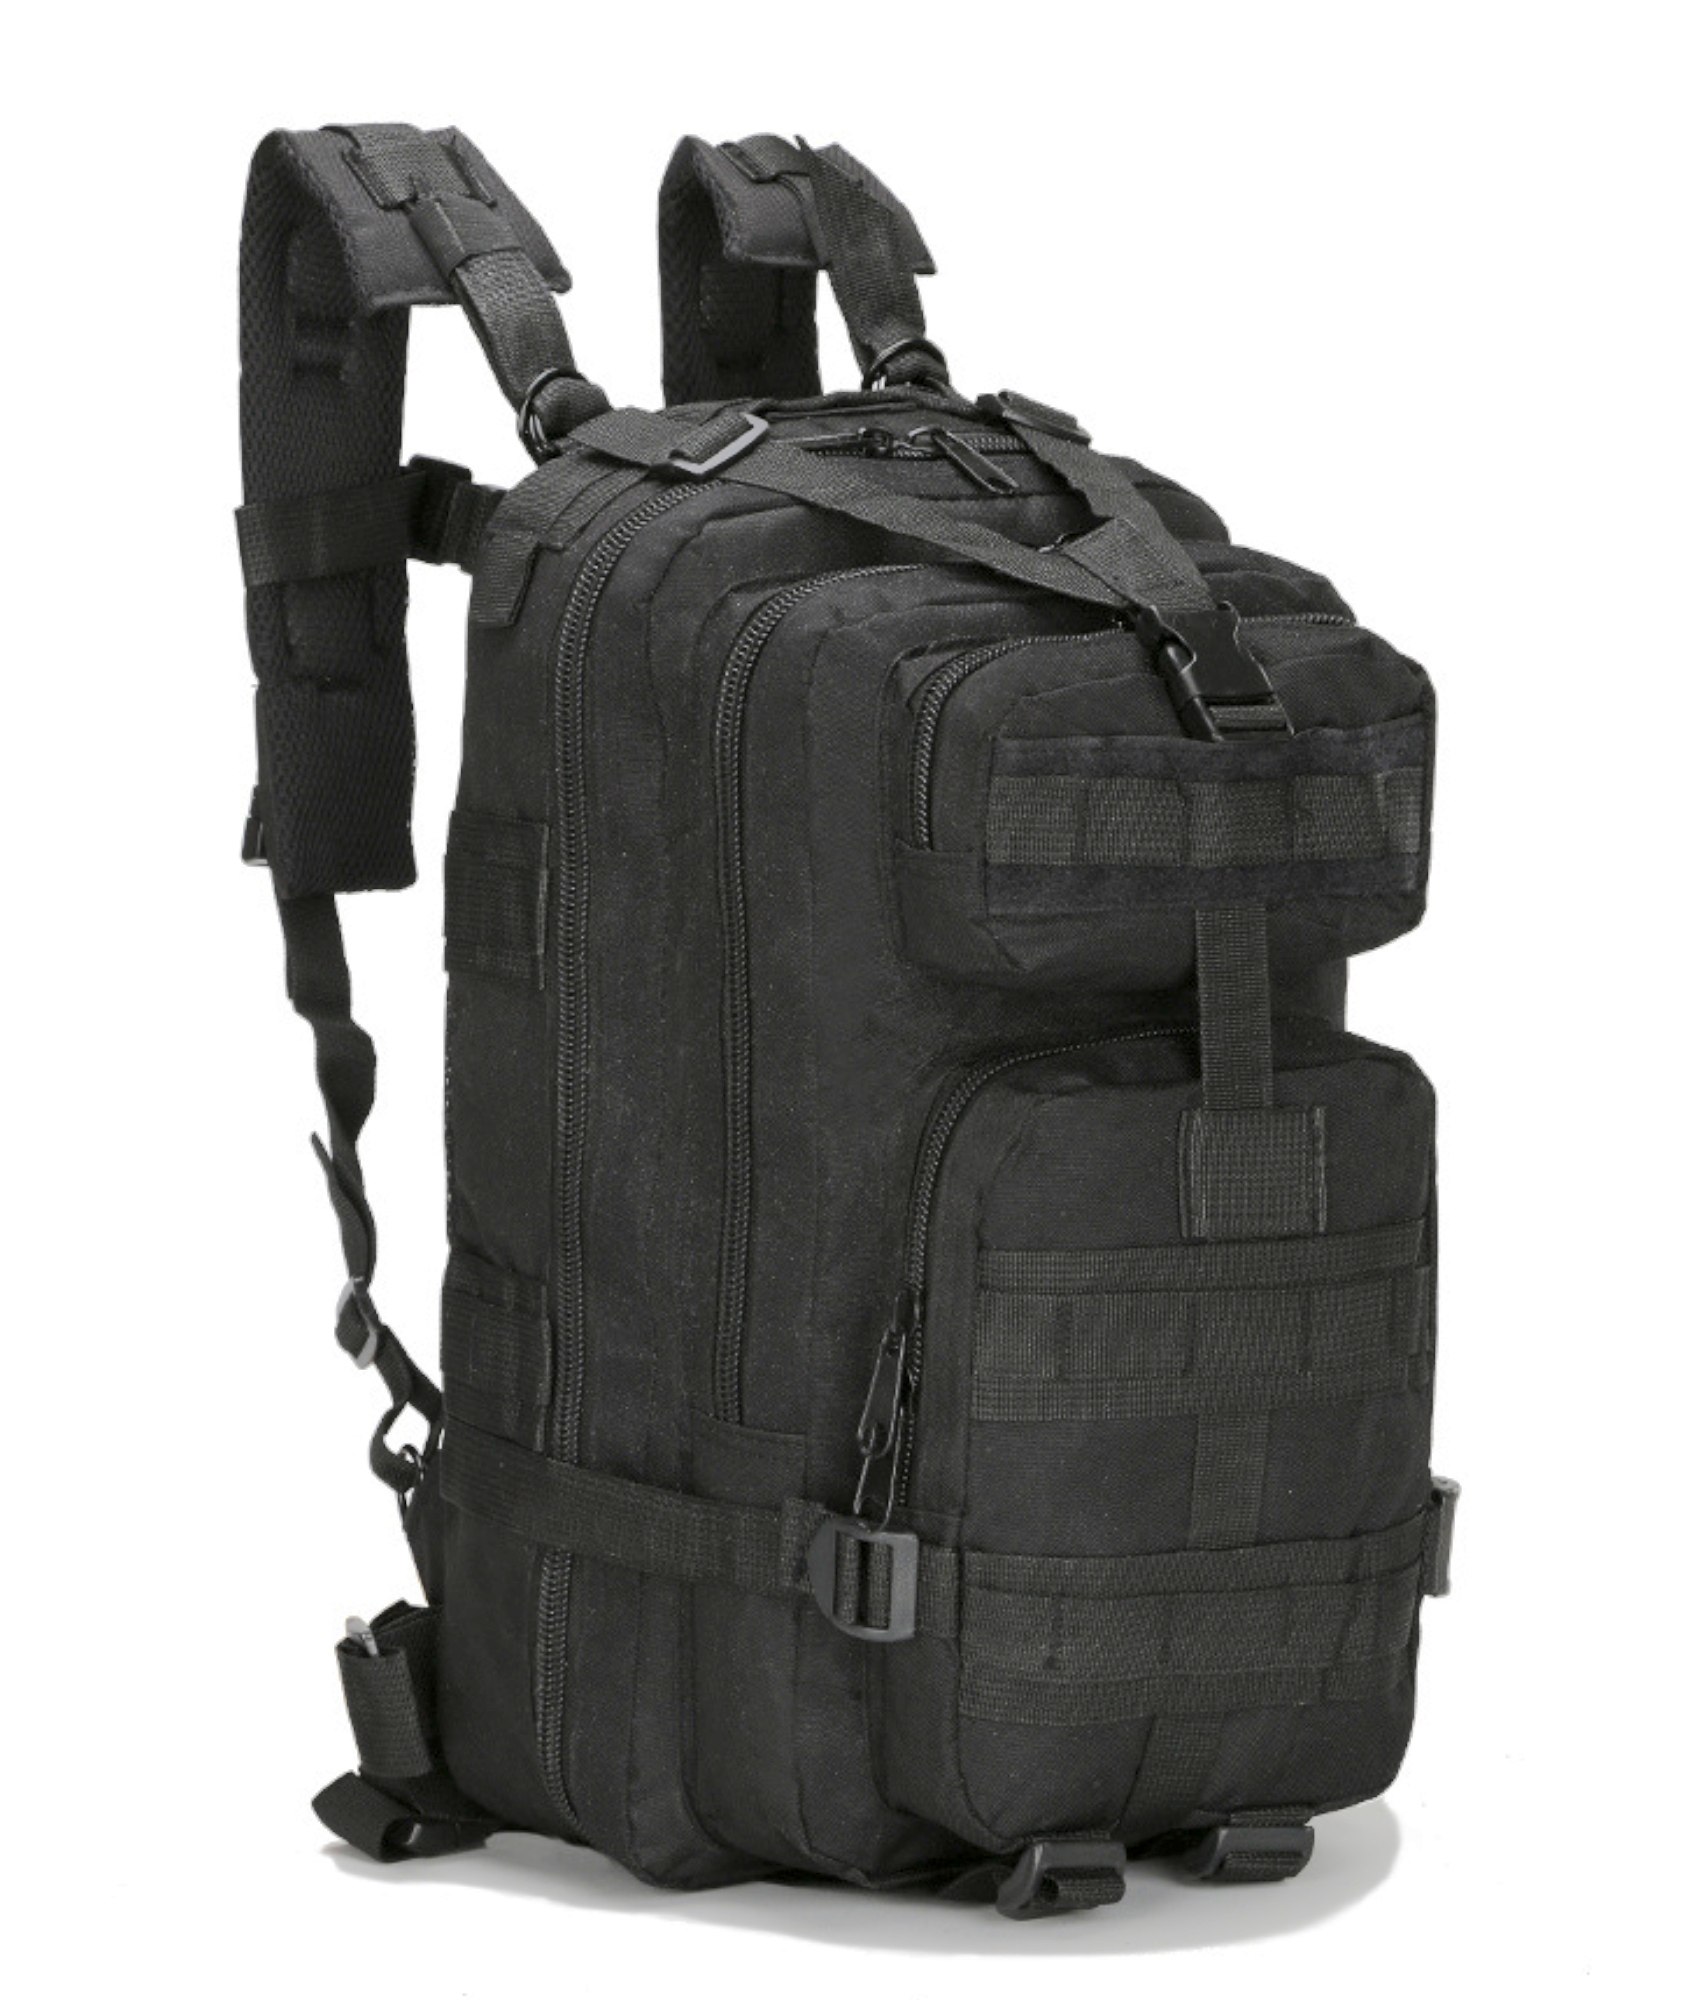 JupiterGear Military Tactical 25L Backpack Army Assault Pack Molle Bag Rucksack Range Bag